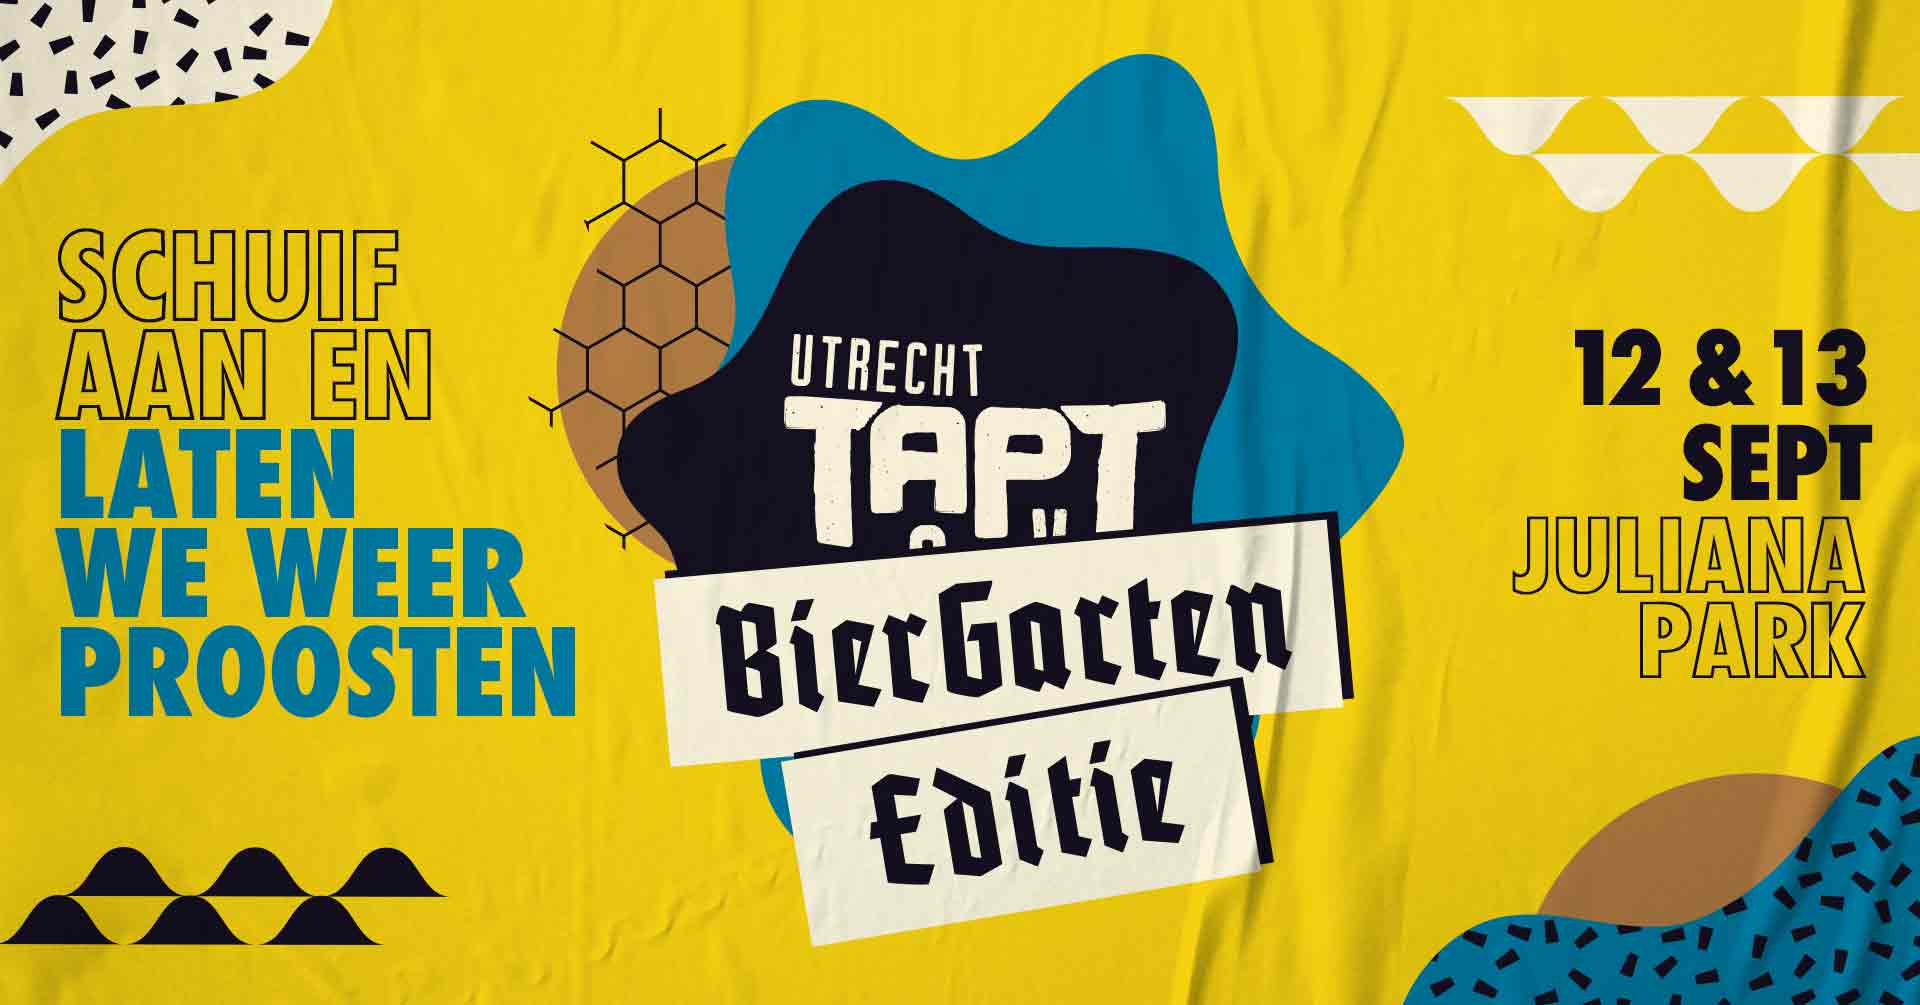 Utrecht TAPT | Biergarten Editie